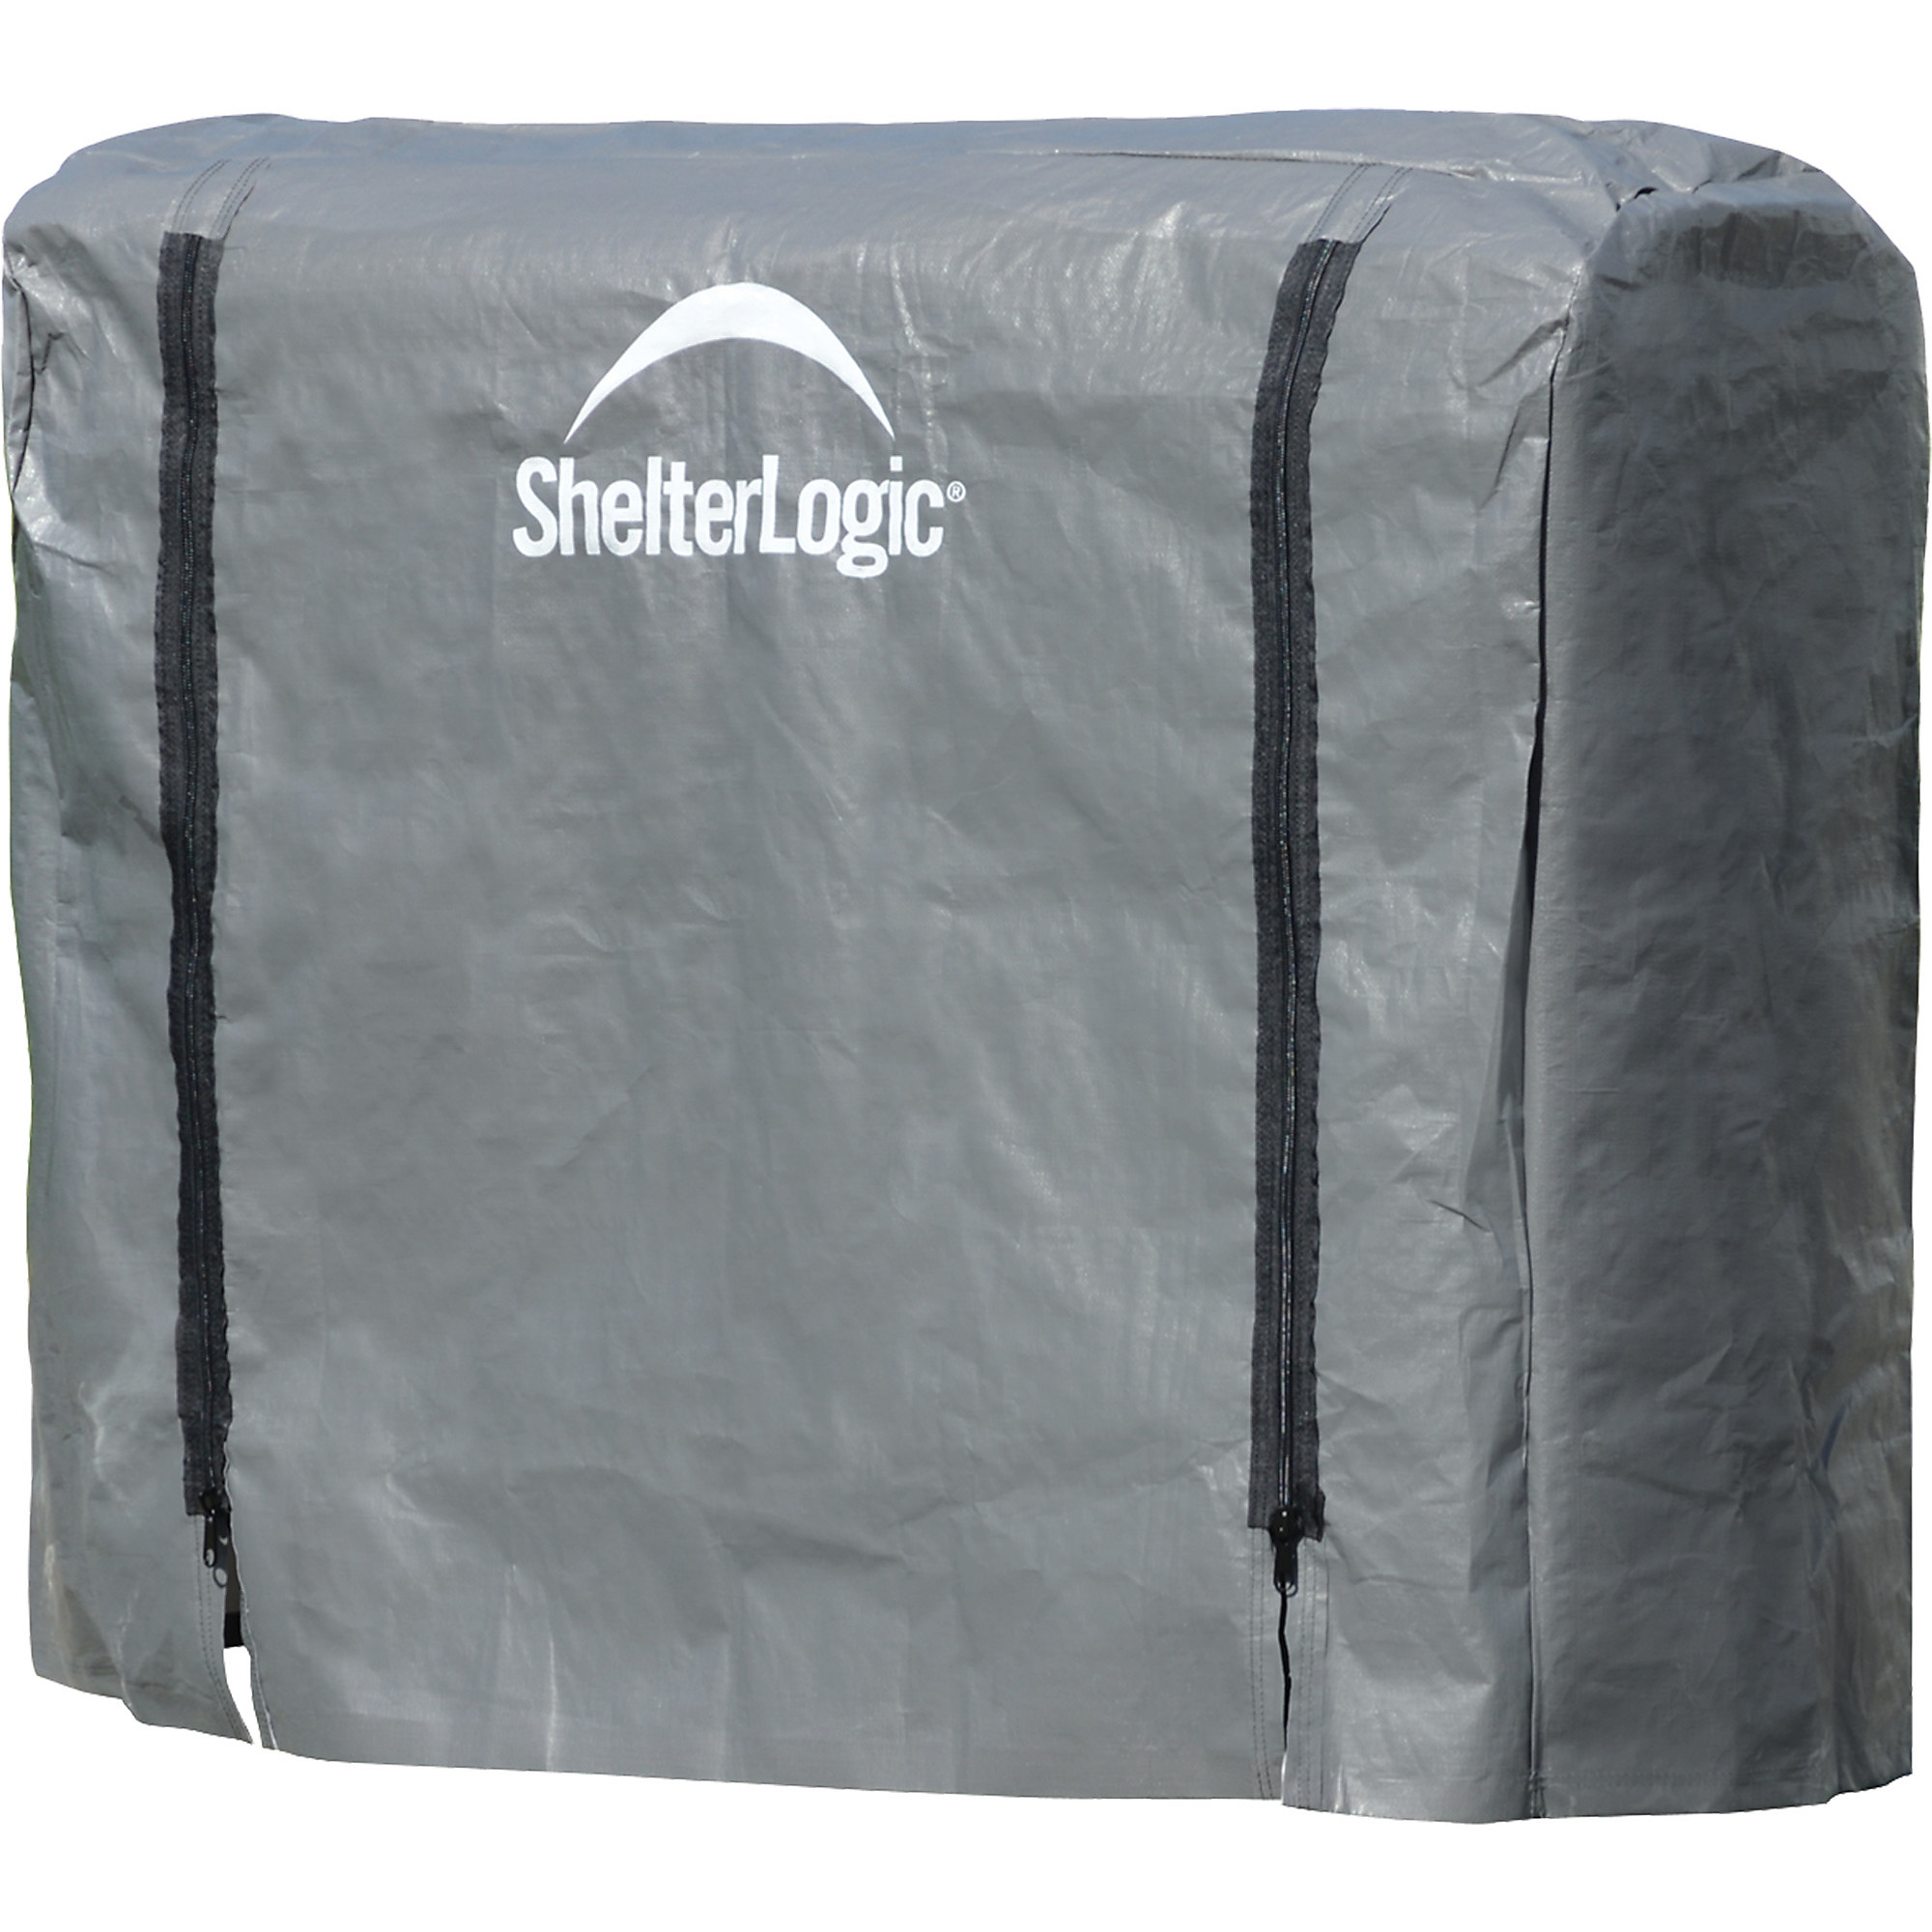 ShelterLogic, Firewood Rack Full Length Cover, Length 4.1 ft, Material Polyethylene, Model 90477